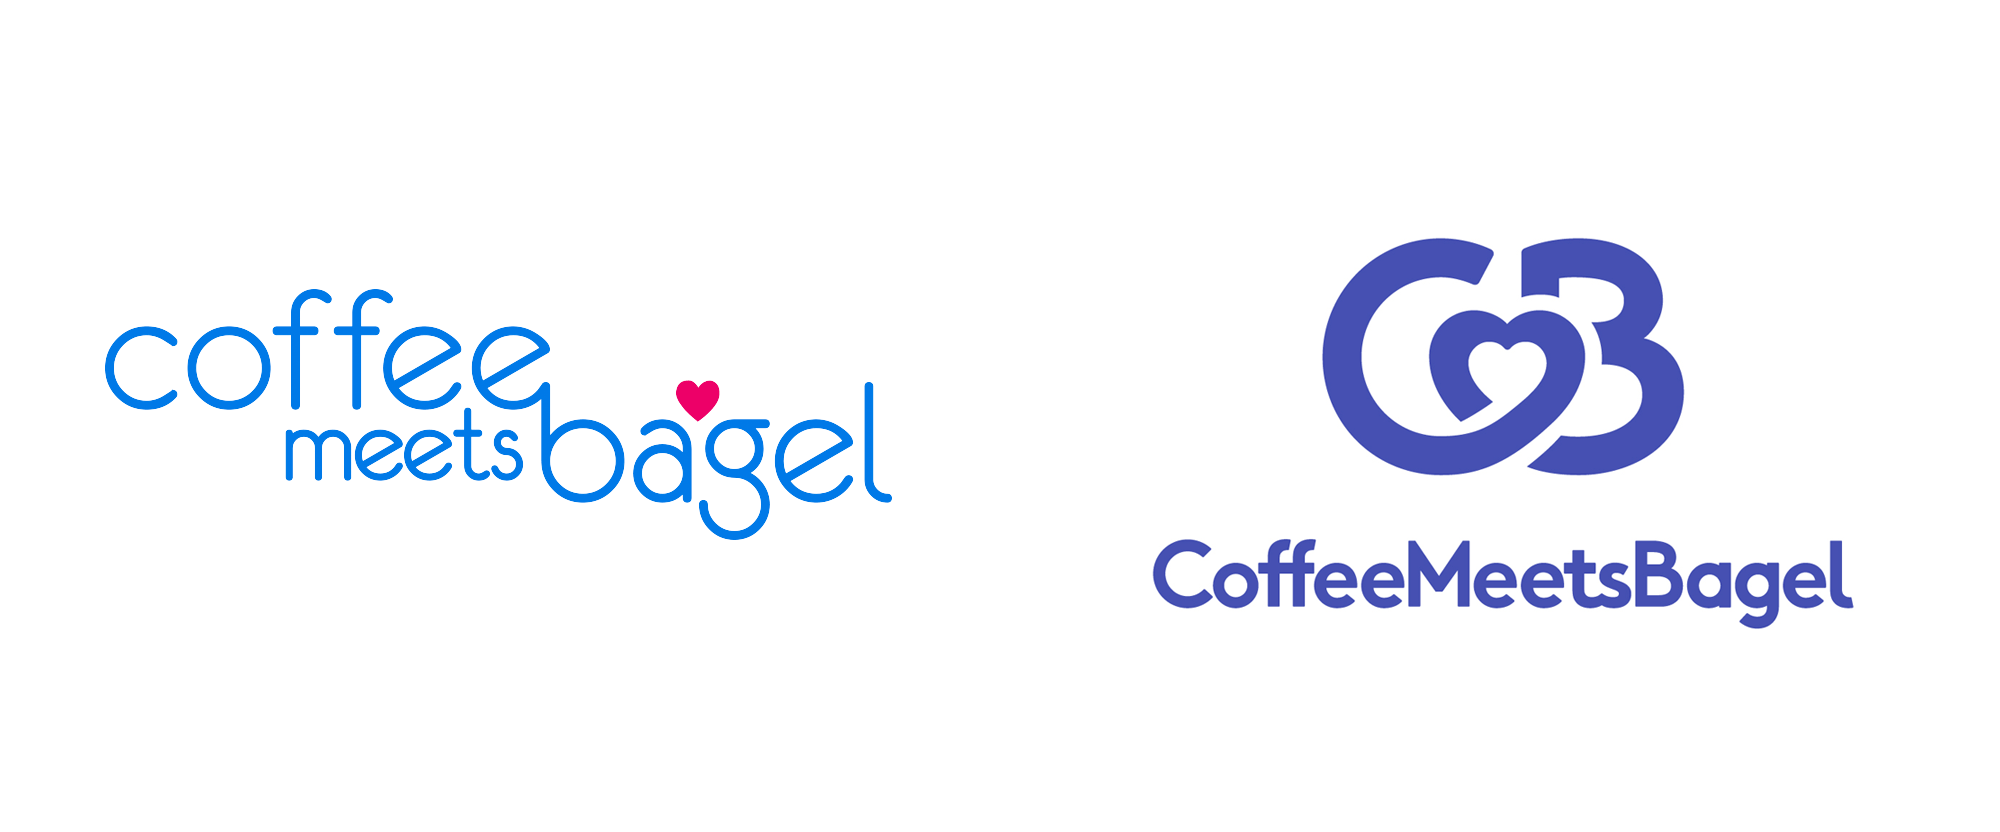 Coffee meets bagel